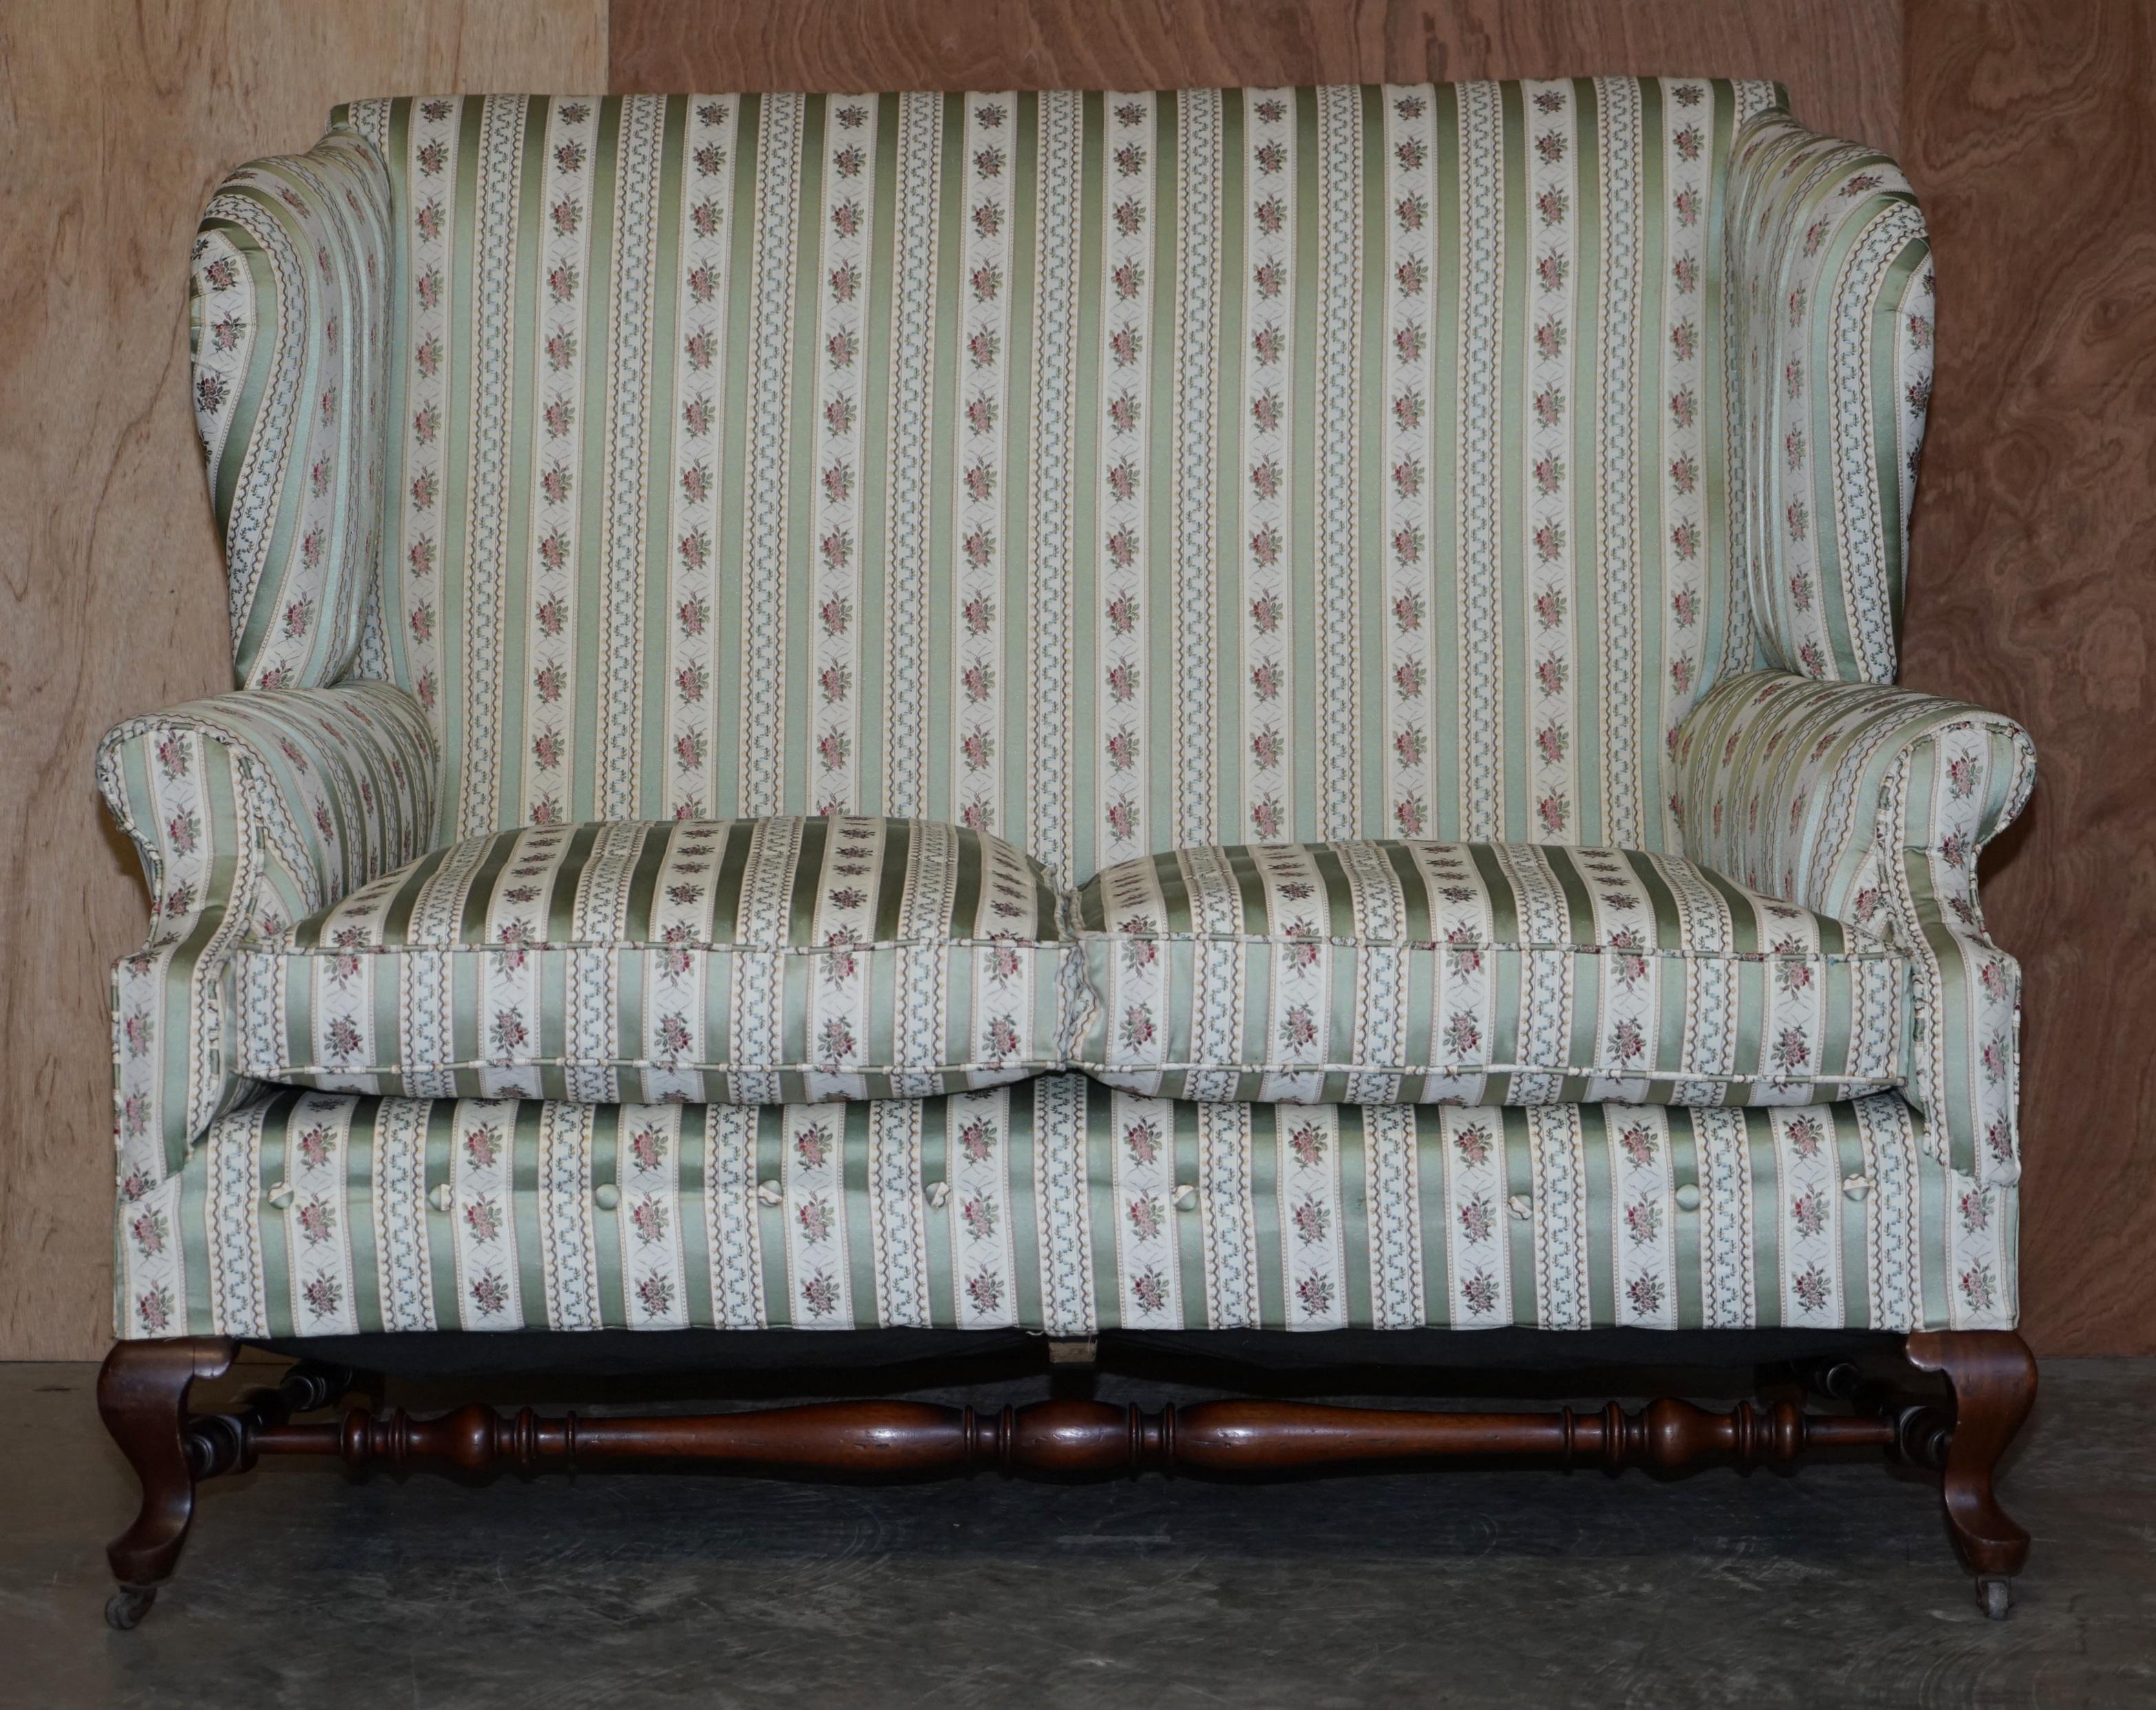 Wir freuen uns, dieses atemberaubende original viktorianische Howard & Son's Sofa mit geschwungener Vorderseite und doppelter Rückenlehne, voll gestempelt mit H&S Inlett, zum Verkauf anzubieten

Ein wirklich atemberaubendes Stück, in erhabenen